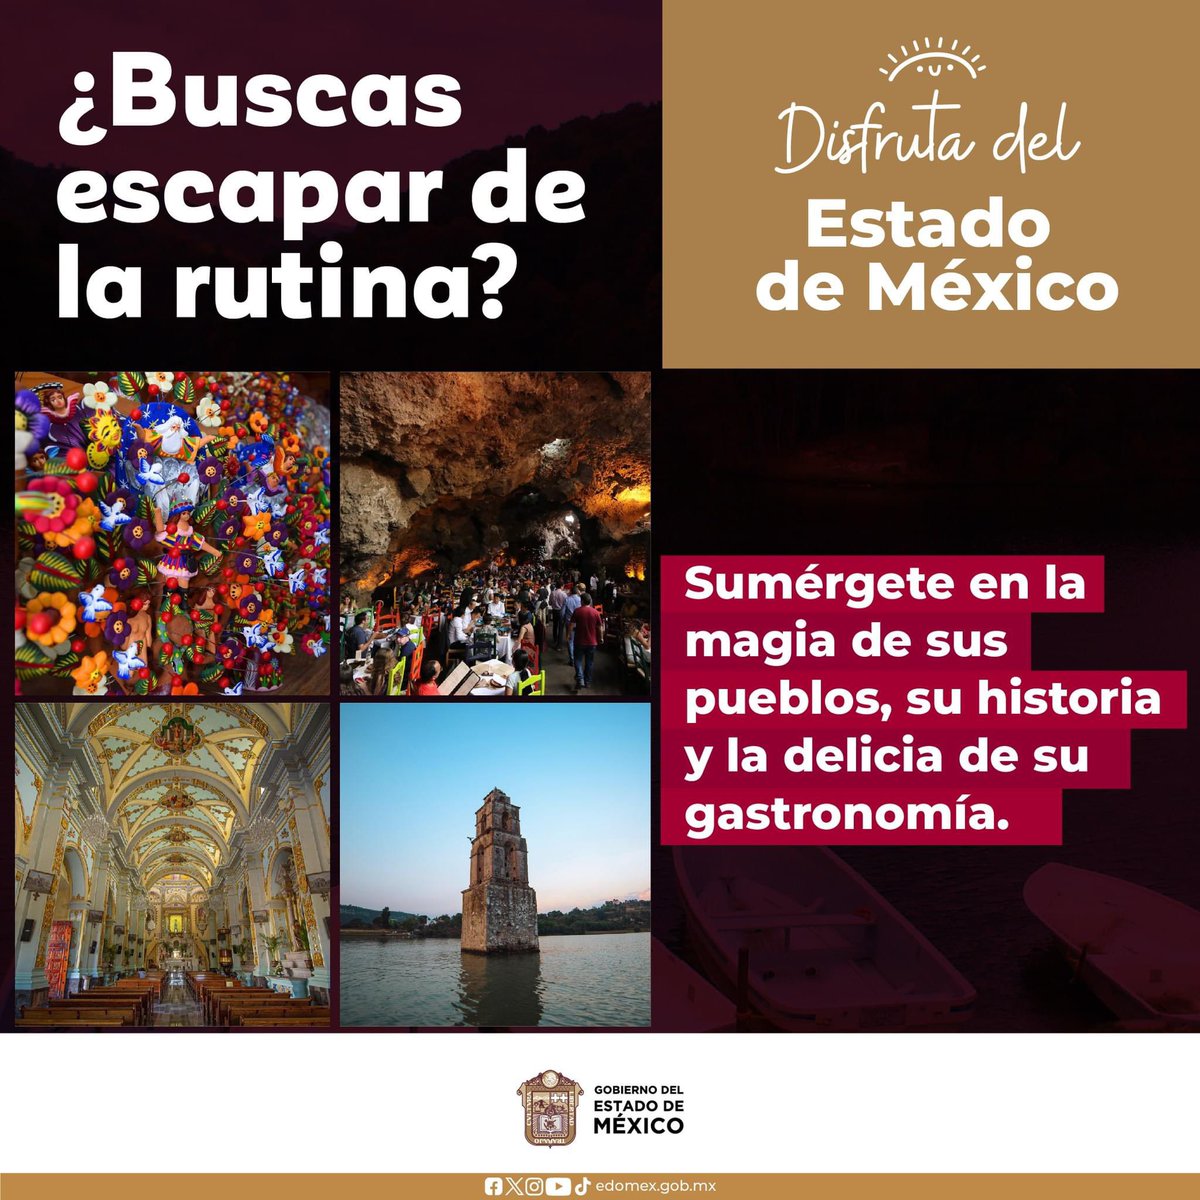 Los municipios del #EstadoDeMéxico resguardan una increíble riqueza gastronómica, artesanal, cultural d histórica. Déjate enamorar y sorprender en cada destino.